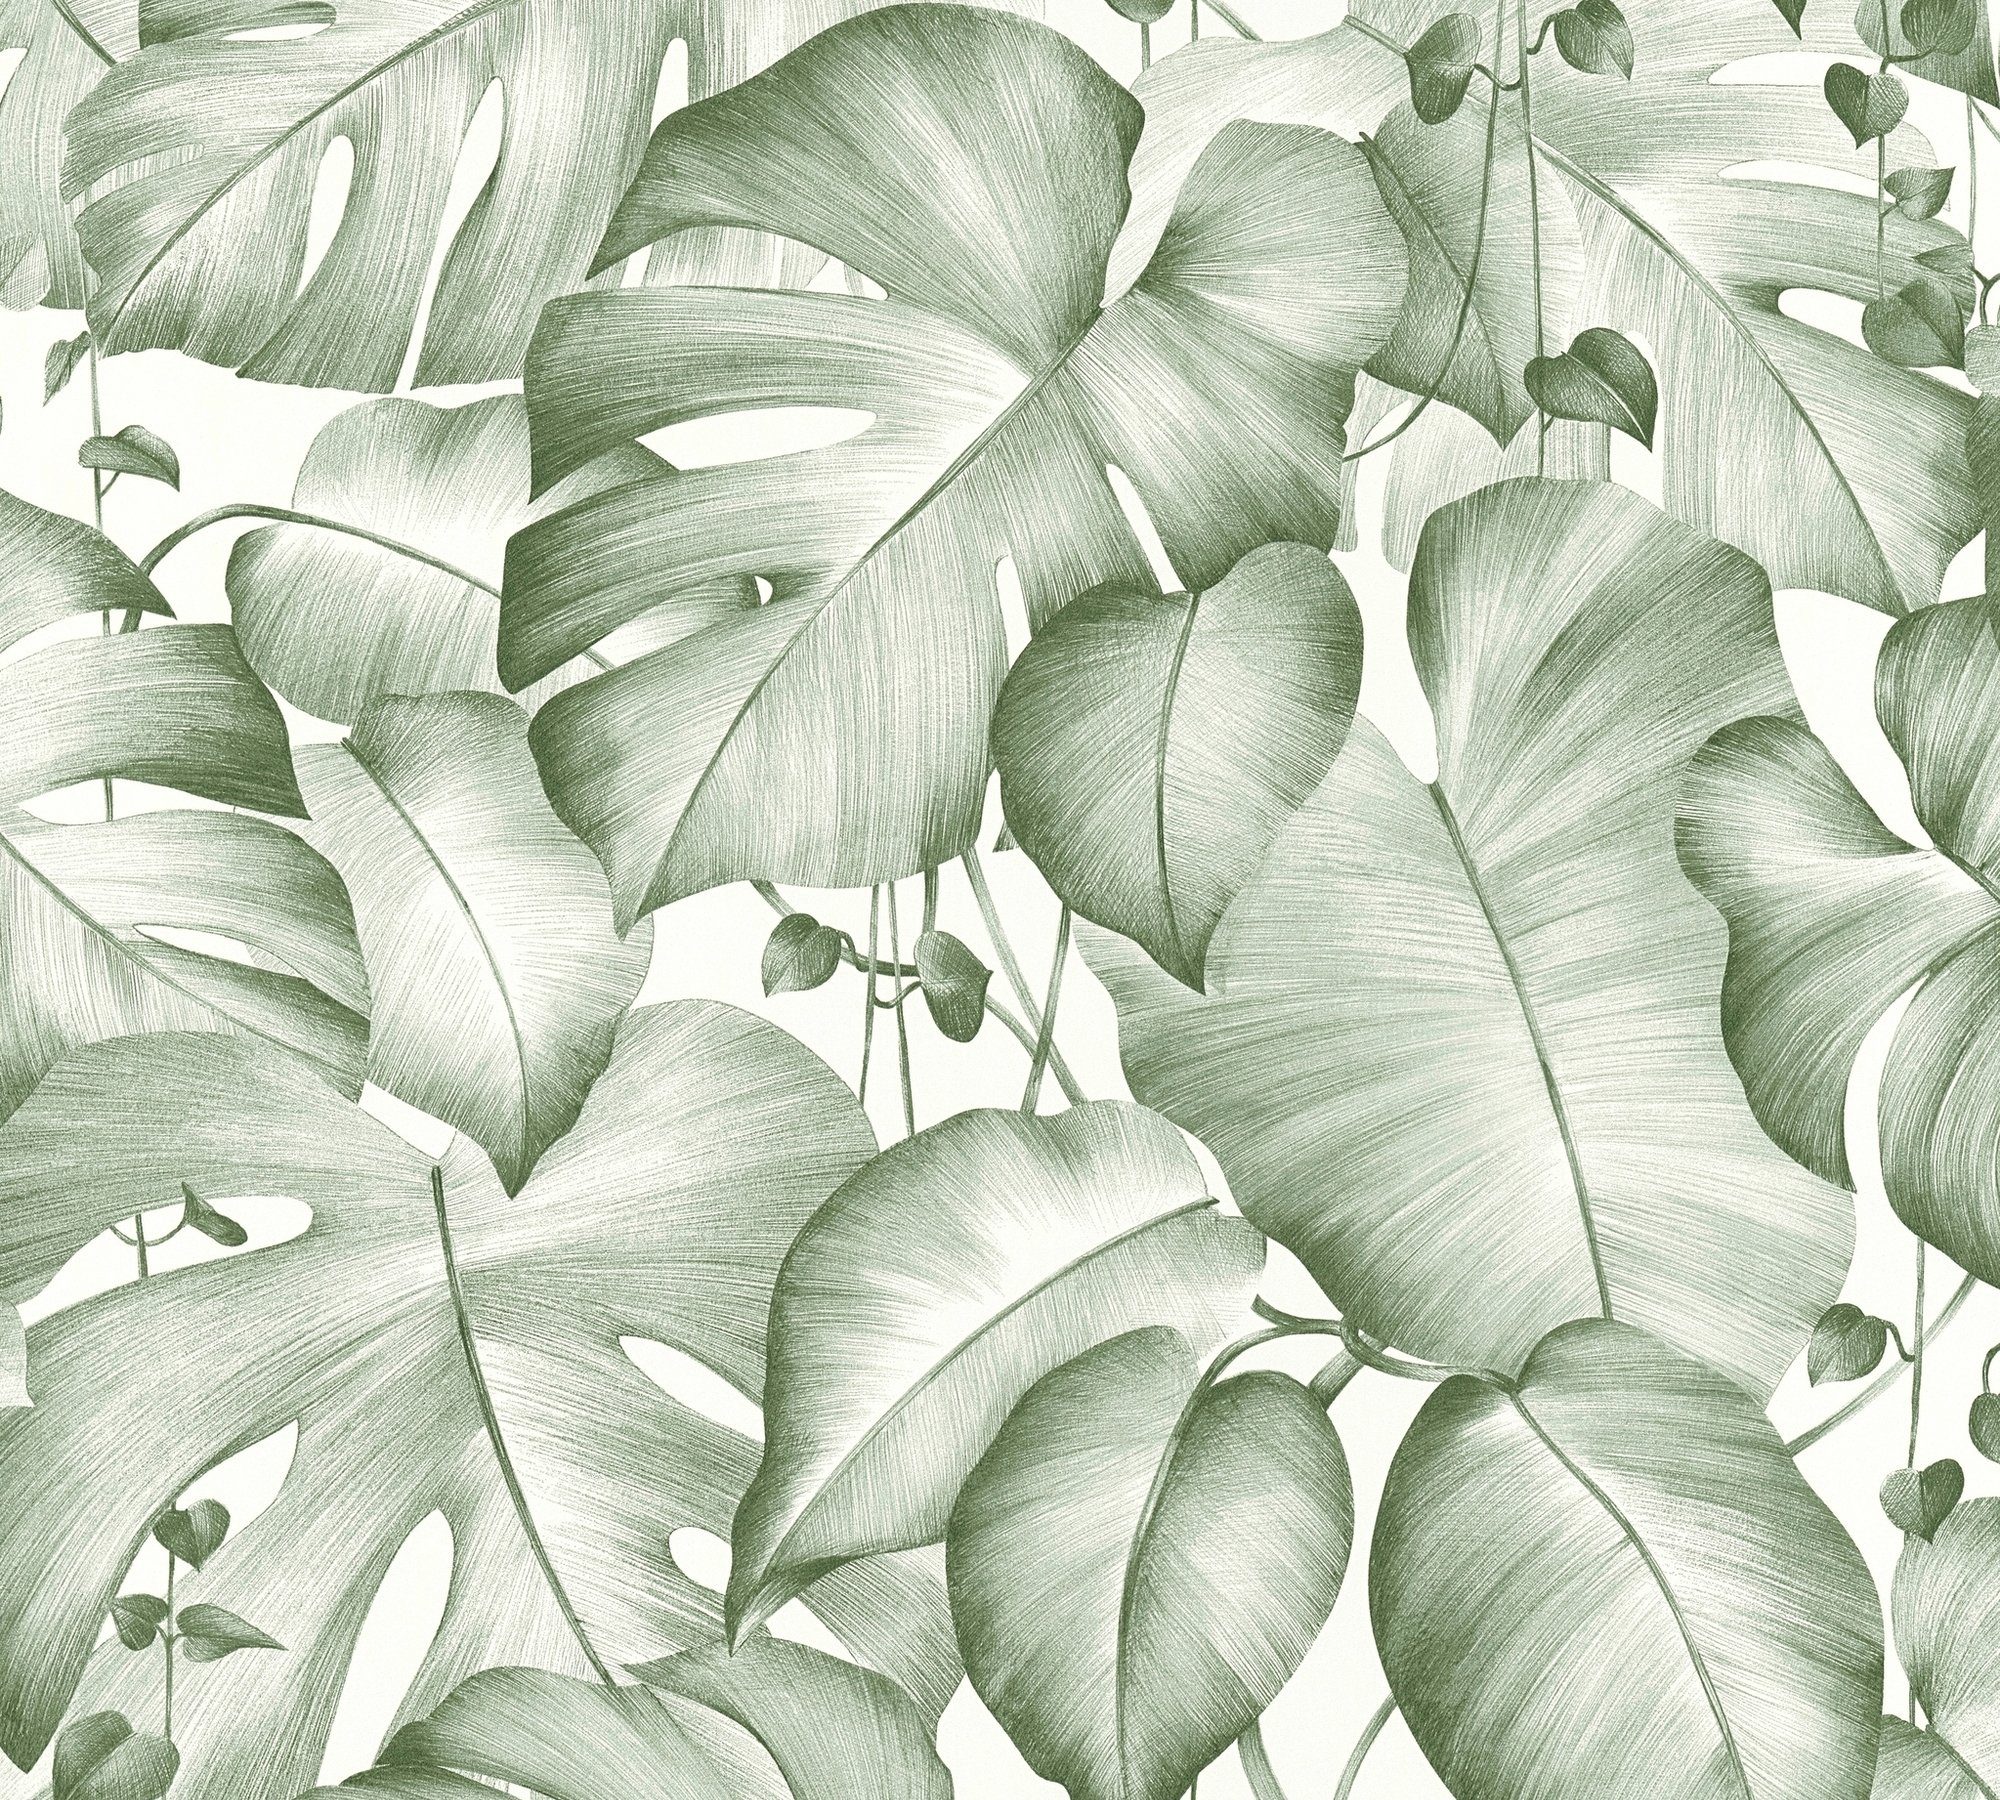 Neueste Artikel von living walls Vinyltapete Pop Up Panel angebracht werden floral, x 2,50 3D, und Kann ebenen haftfähigen m, 0,52 Panel allen auf Selbstklebend Tapete Palmen trockenen, m Grün Weiß strukturiert, Dschungel Untergründen